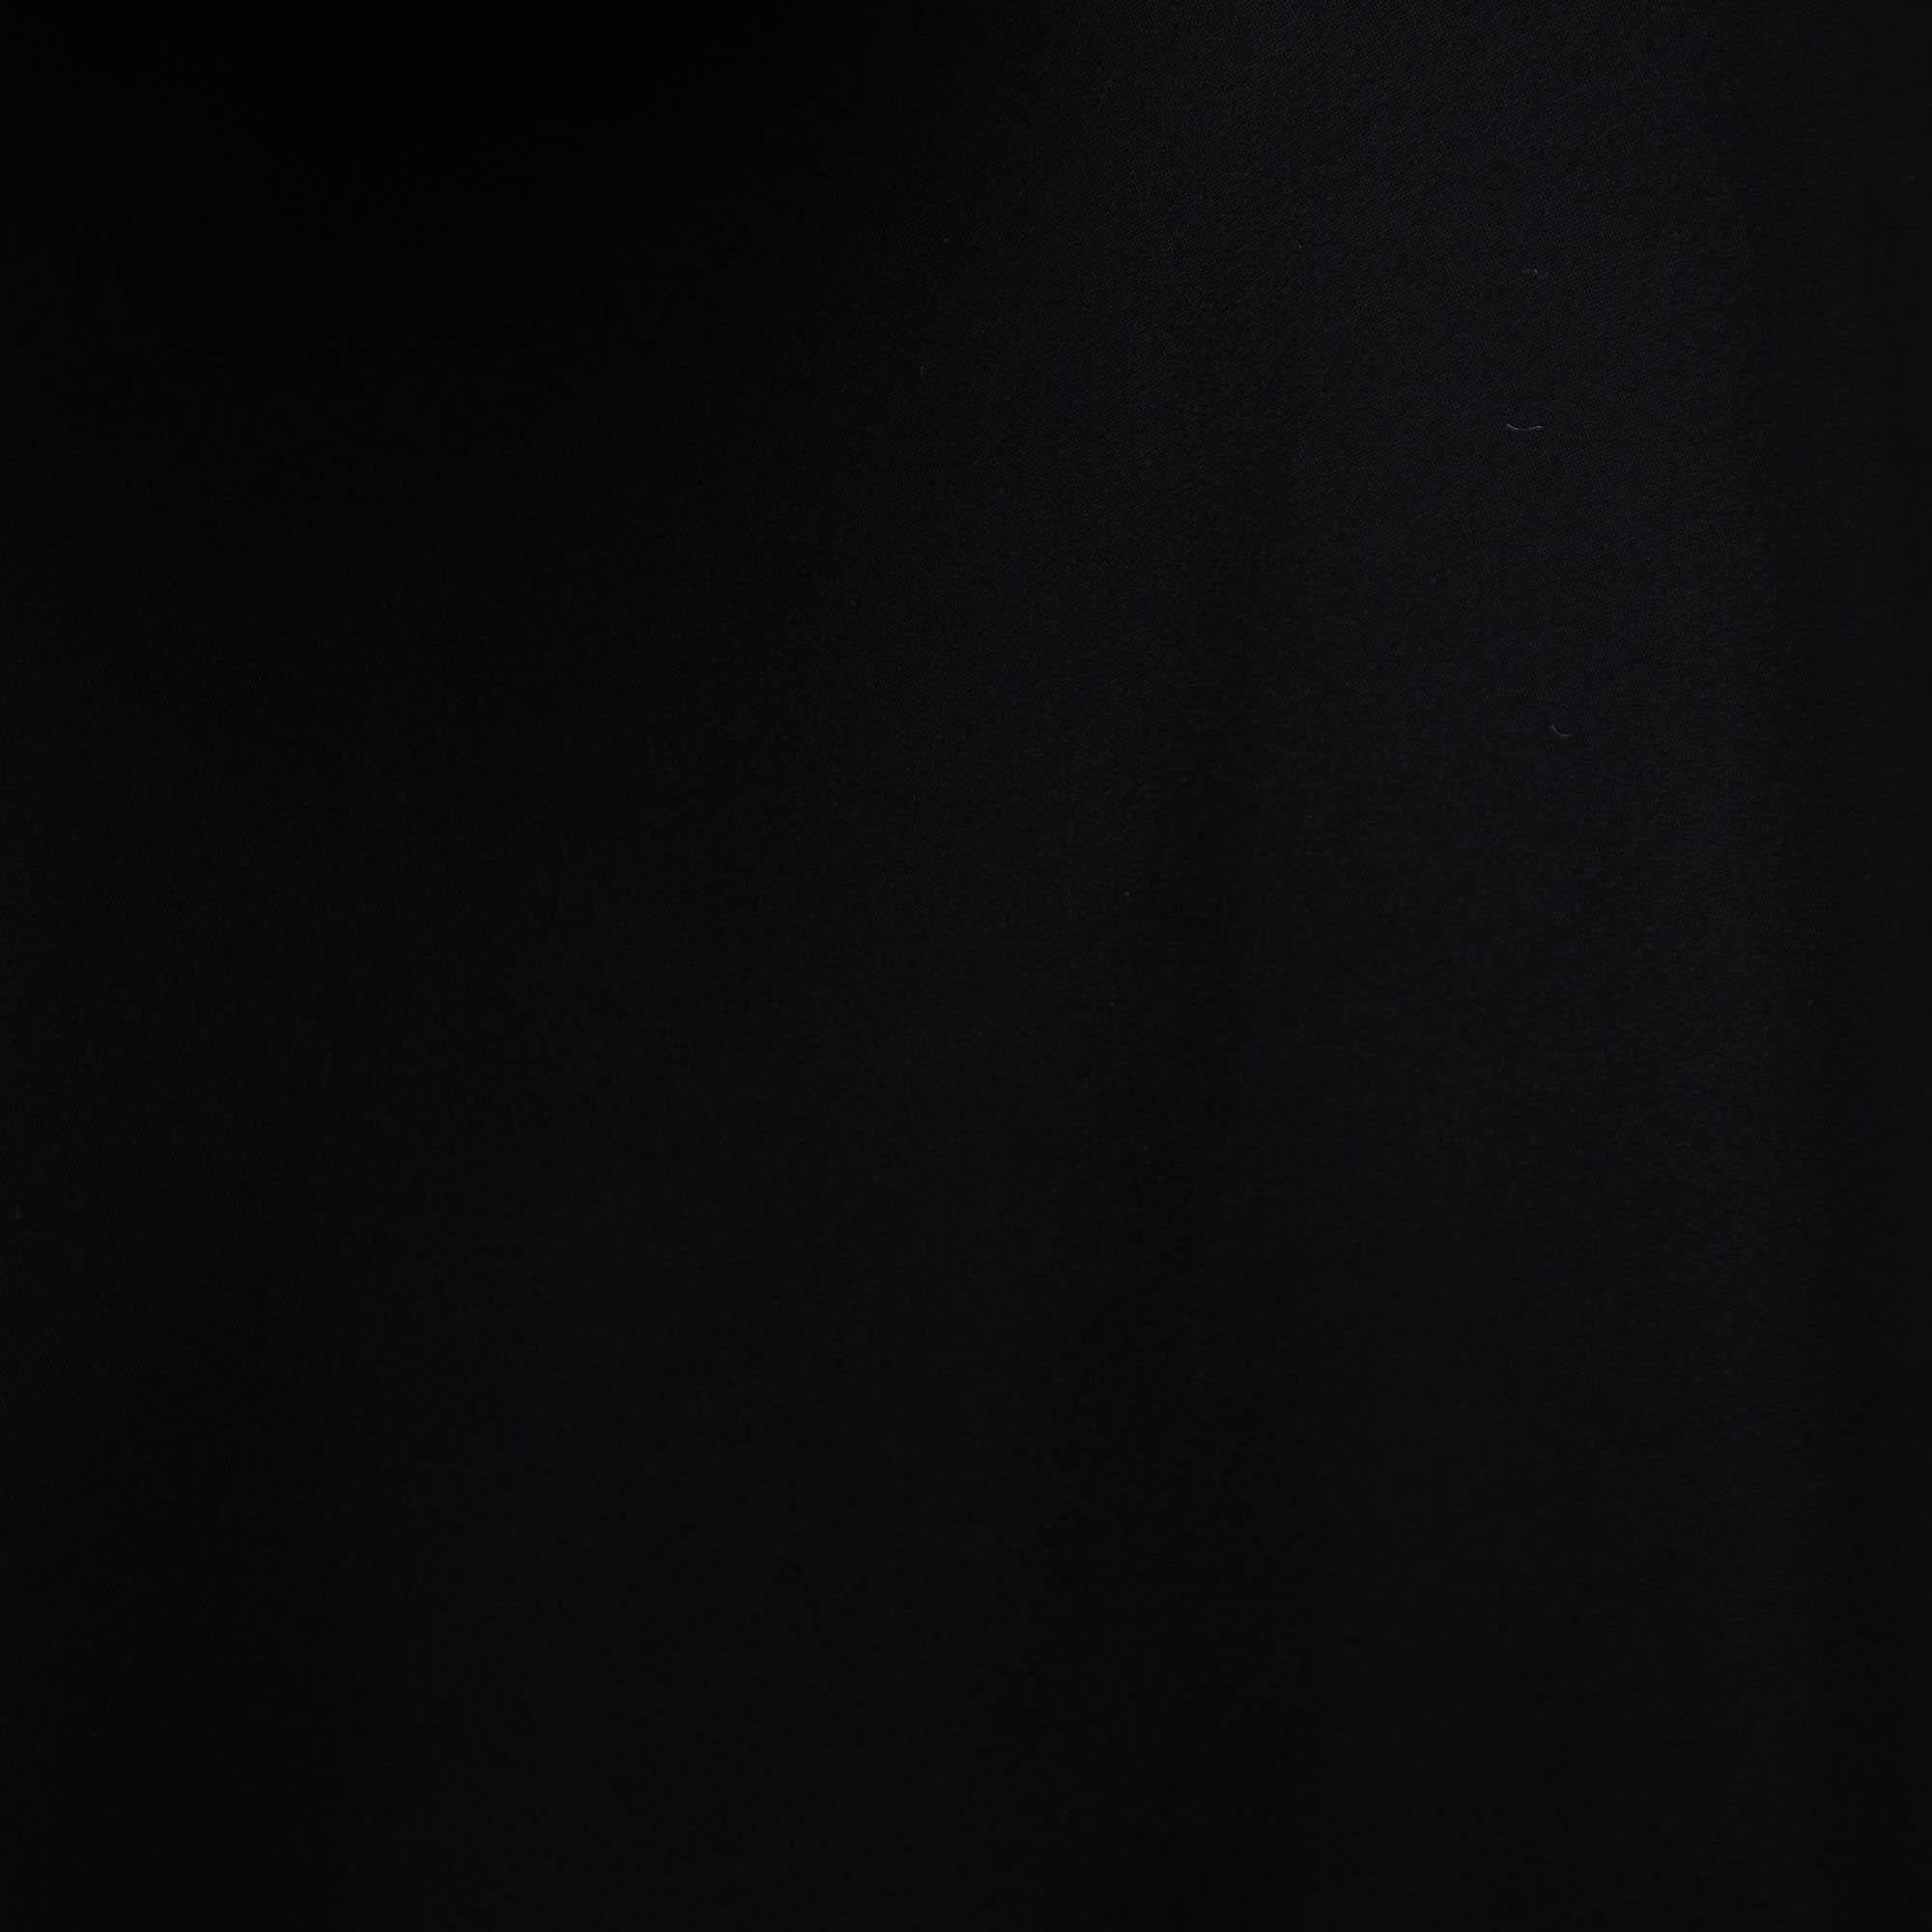 CH Carolina Herrera Monochrome Crepe Flared Sleeveless Dress L In Excellent Condition For Sale In Dubai, Al Qouz 2